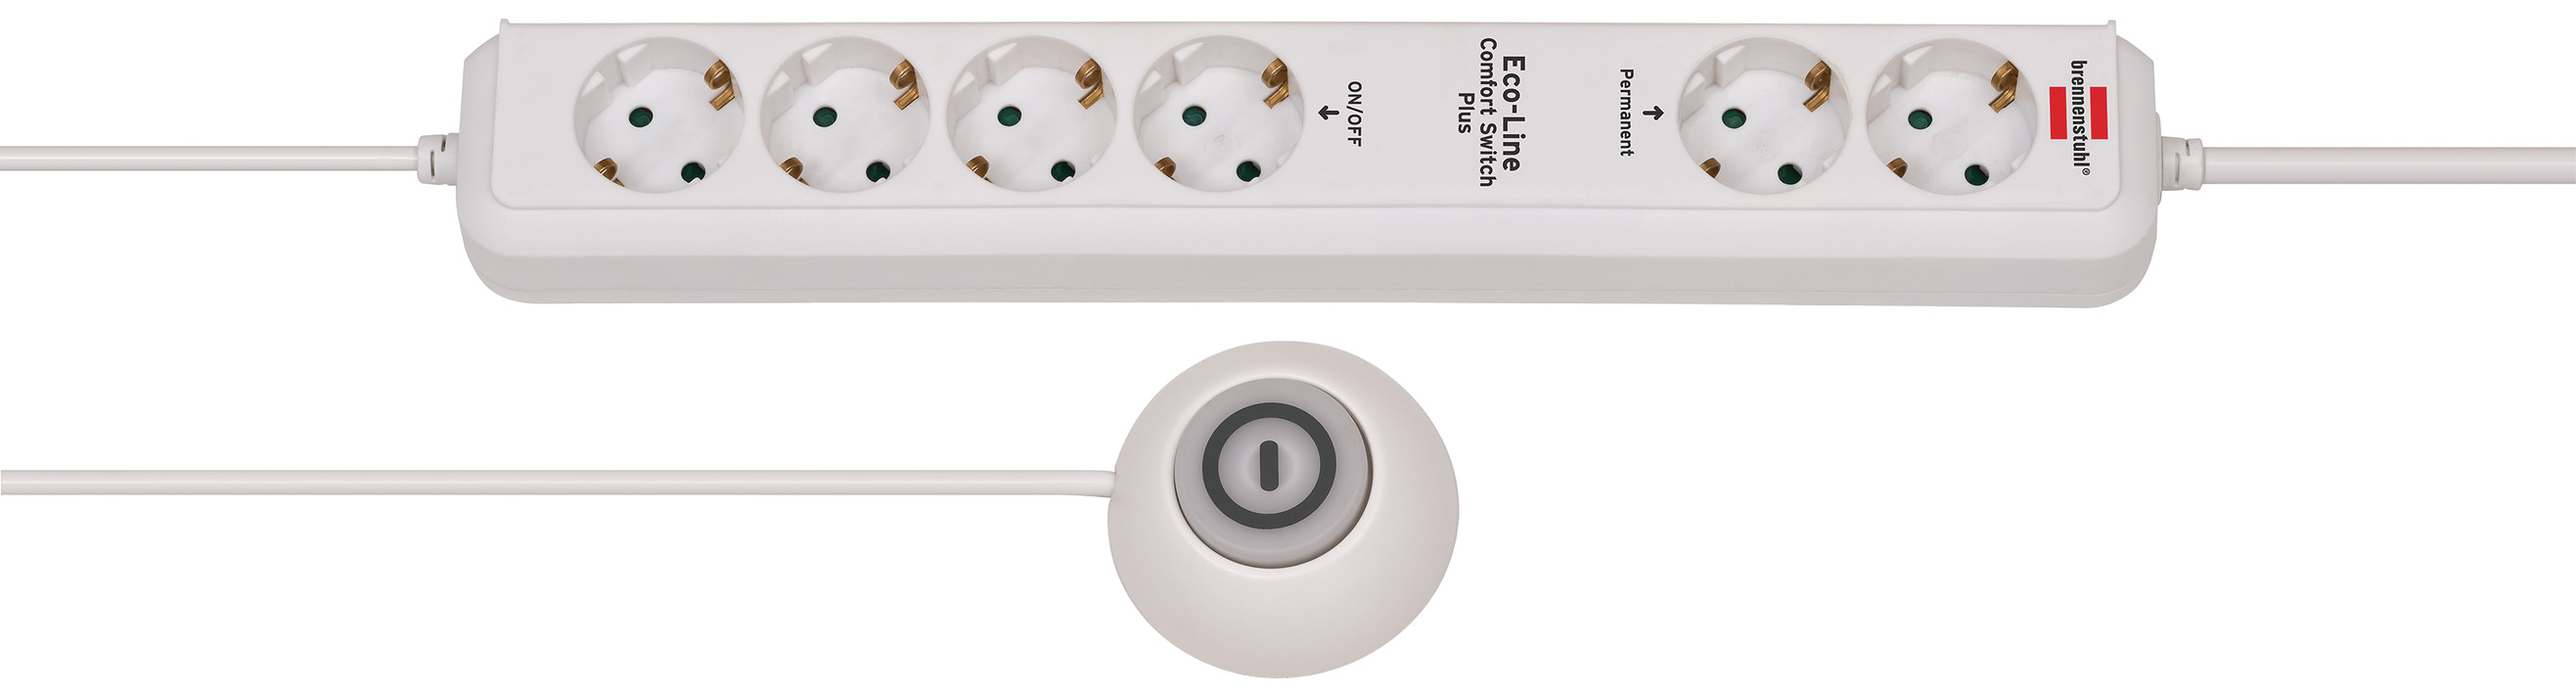 Regleta Eco-Line Comfort Switch EL CSP 24 6-tomas blanco 1,5m H05VV-F 3G1,5  2 permanentes, 4 con interruptor con interruptor manual/pedal